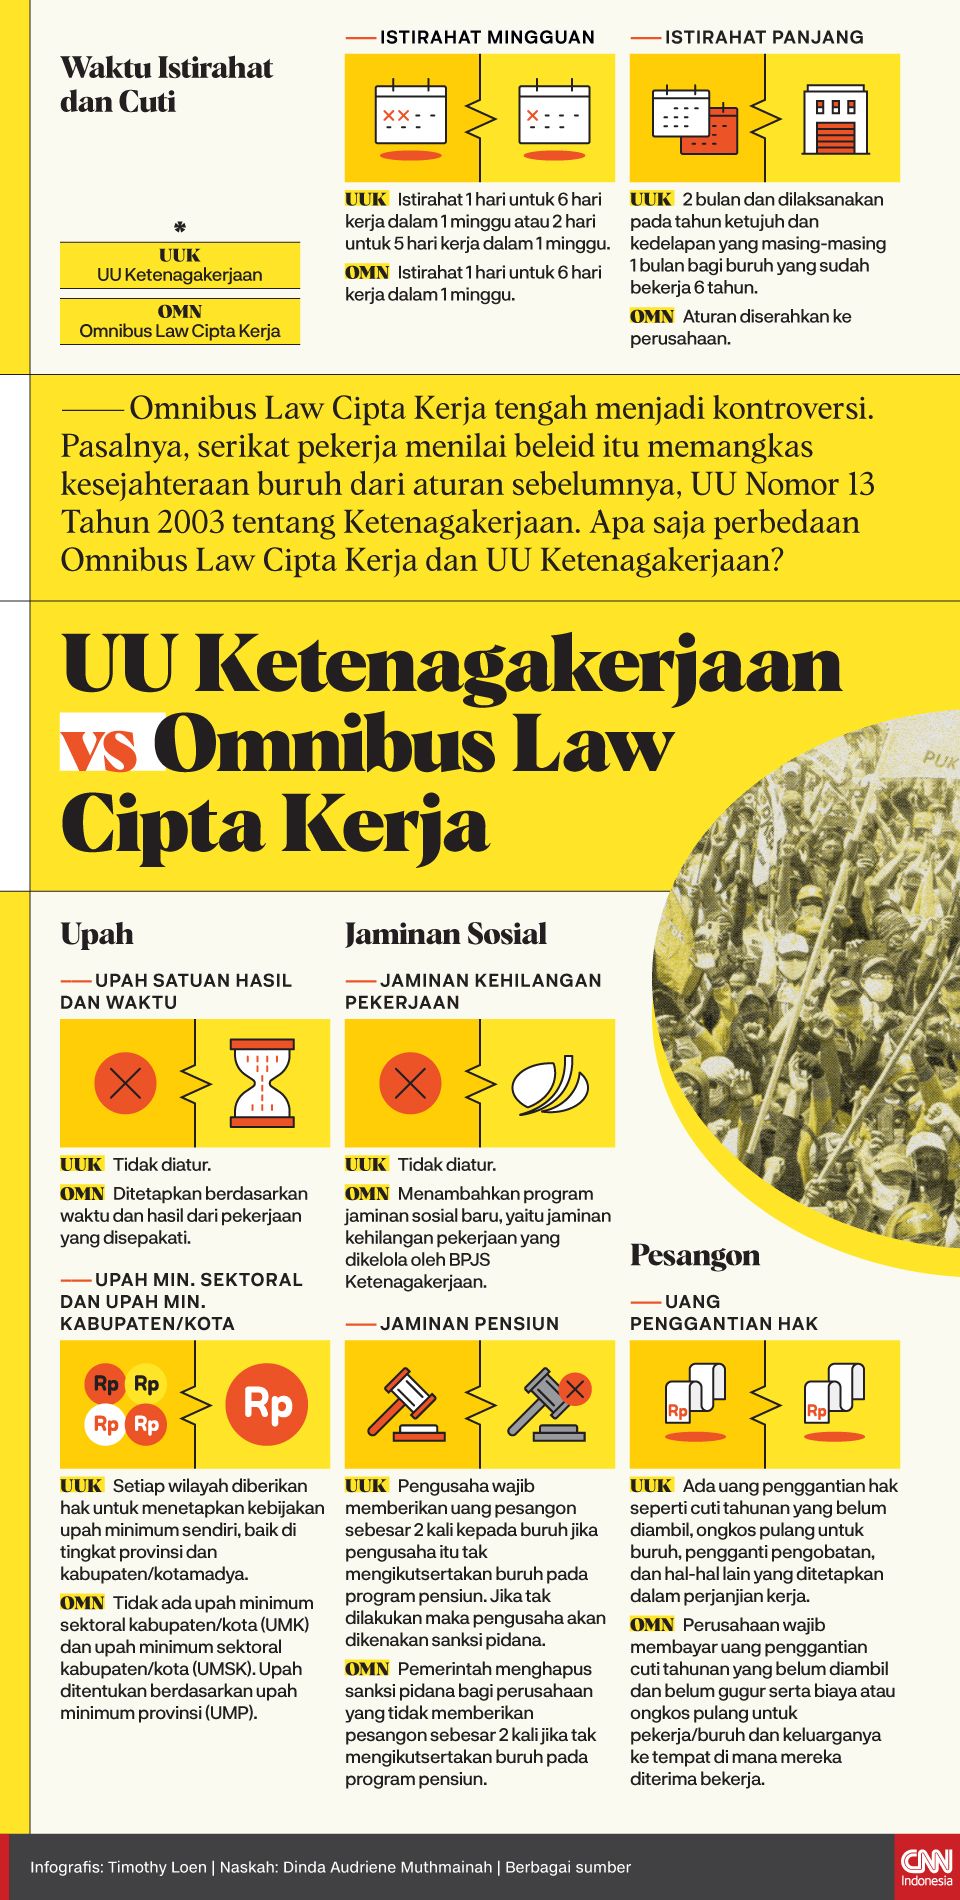 Infografis UU Ketenagakerjaan vs Omnibus Law Cipta Kerja